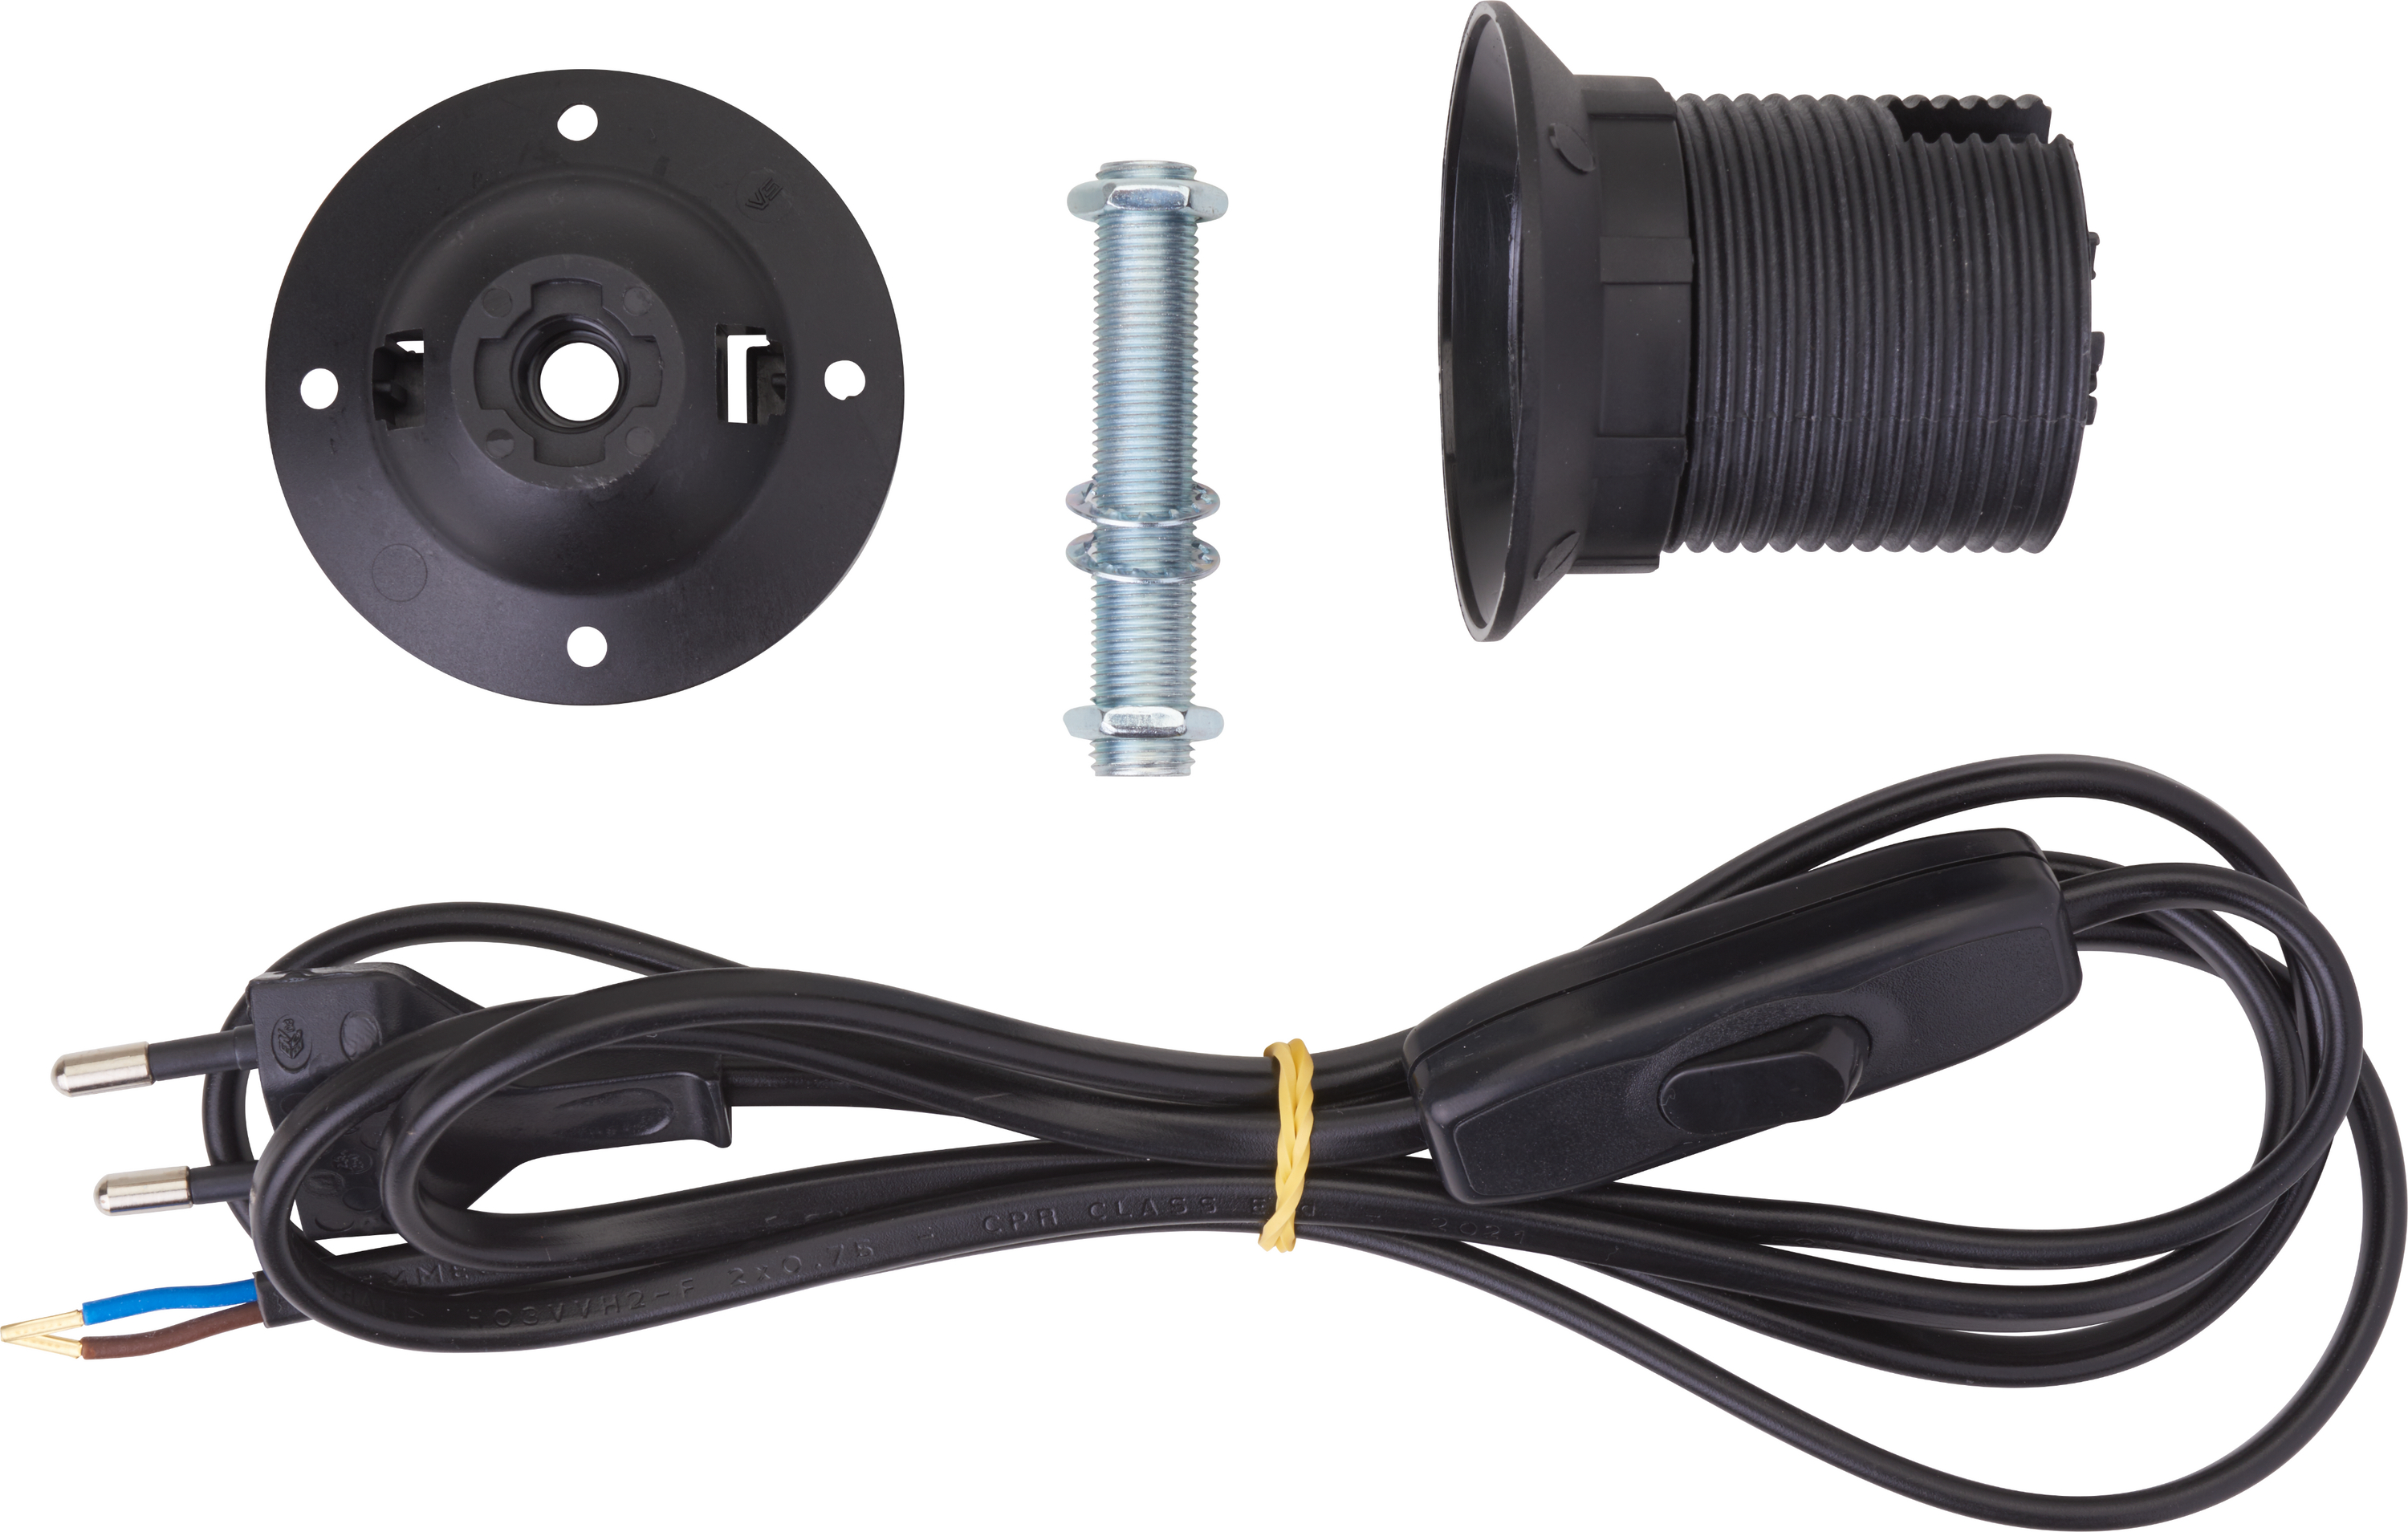 VBS Tischlampen-Anschlusskabel - Kabel, Schalter und Fassung E27